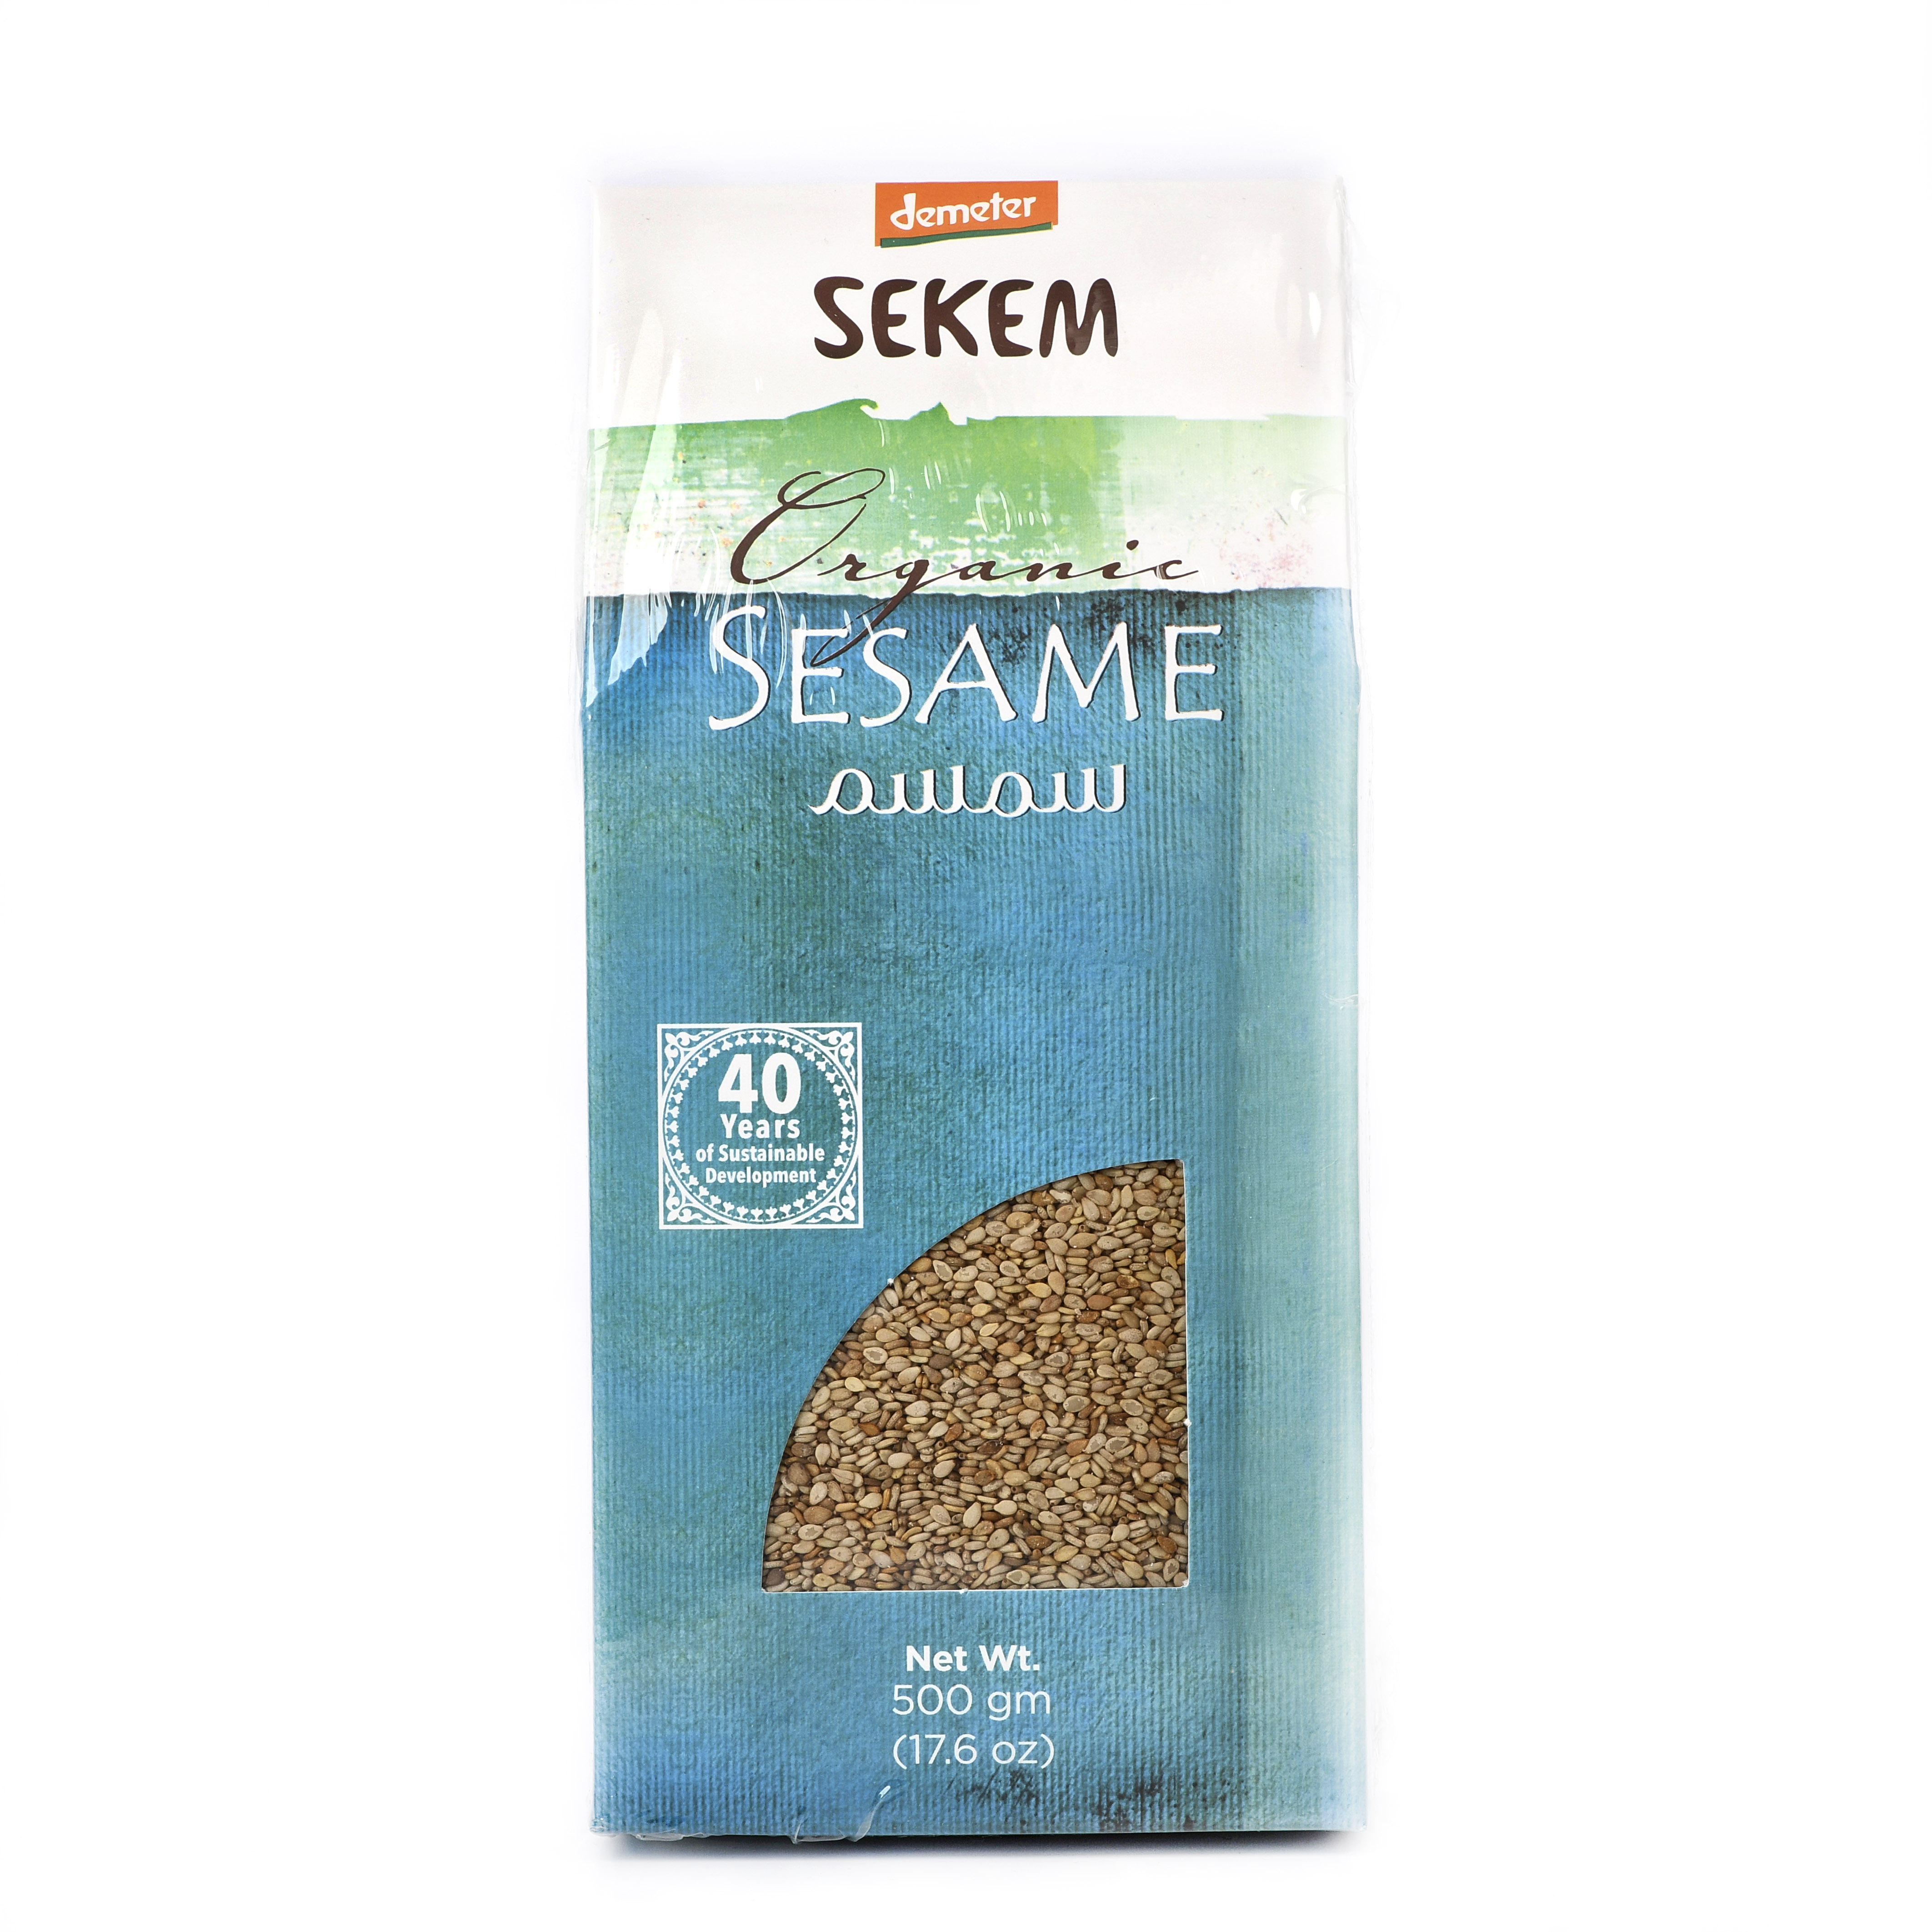 Органический нешлифованный кунжут SEKEM, Demeter - 500 г